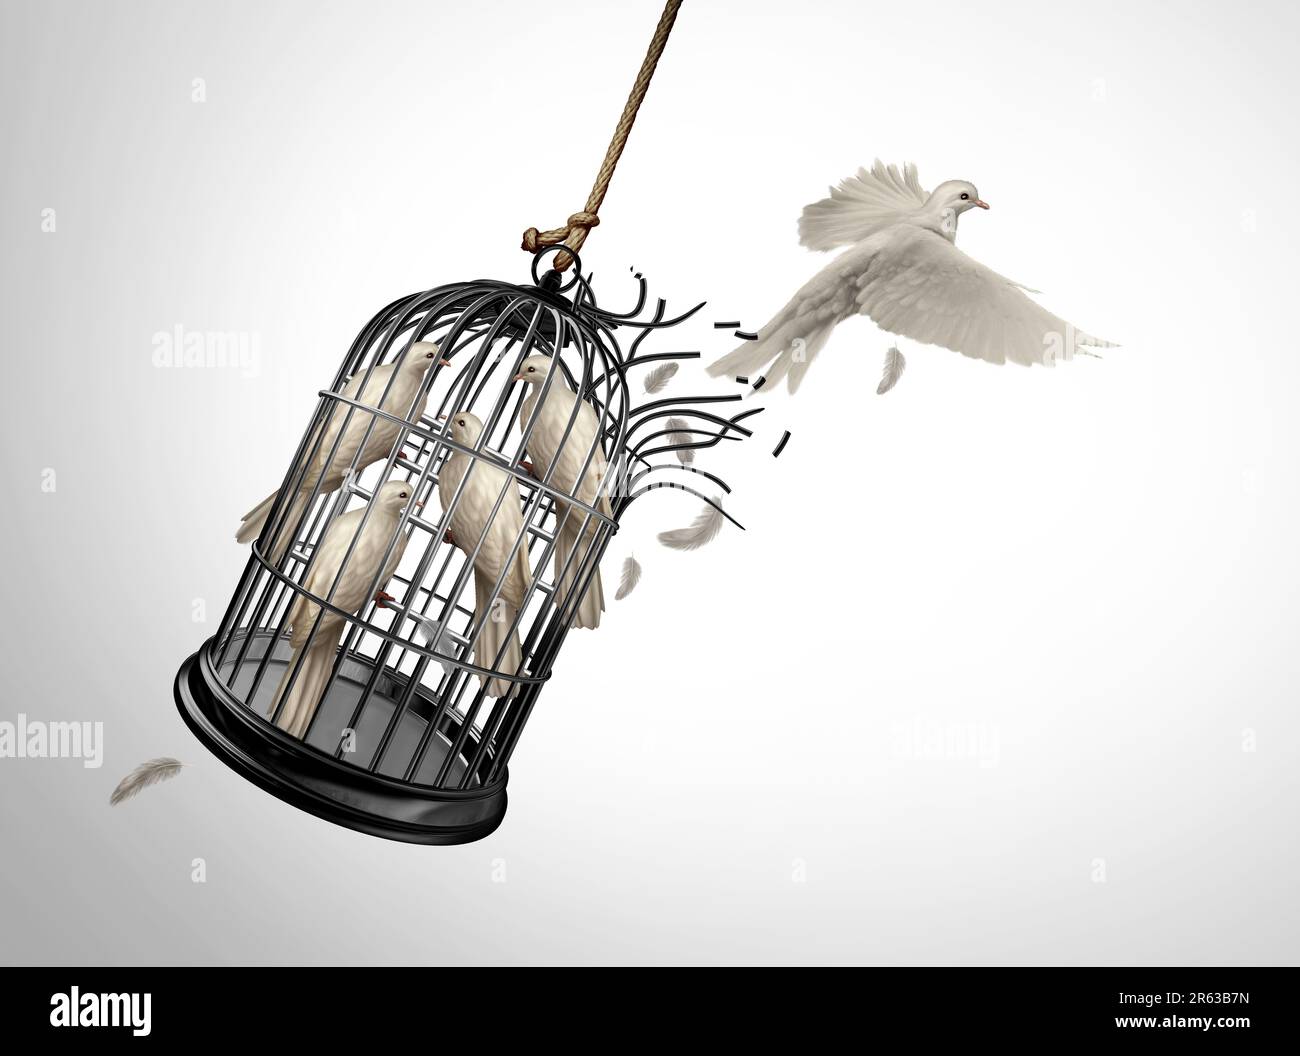 Grenzüberschreitung und Freiheitskonzept wie ein Vogel, der einem Käfig mit inhaftierten Vögeln entkommt, als Symbol für Individualismus und Zweckmäßigkeit Stockfoto